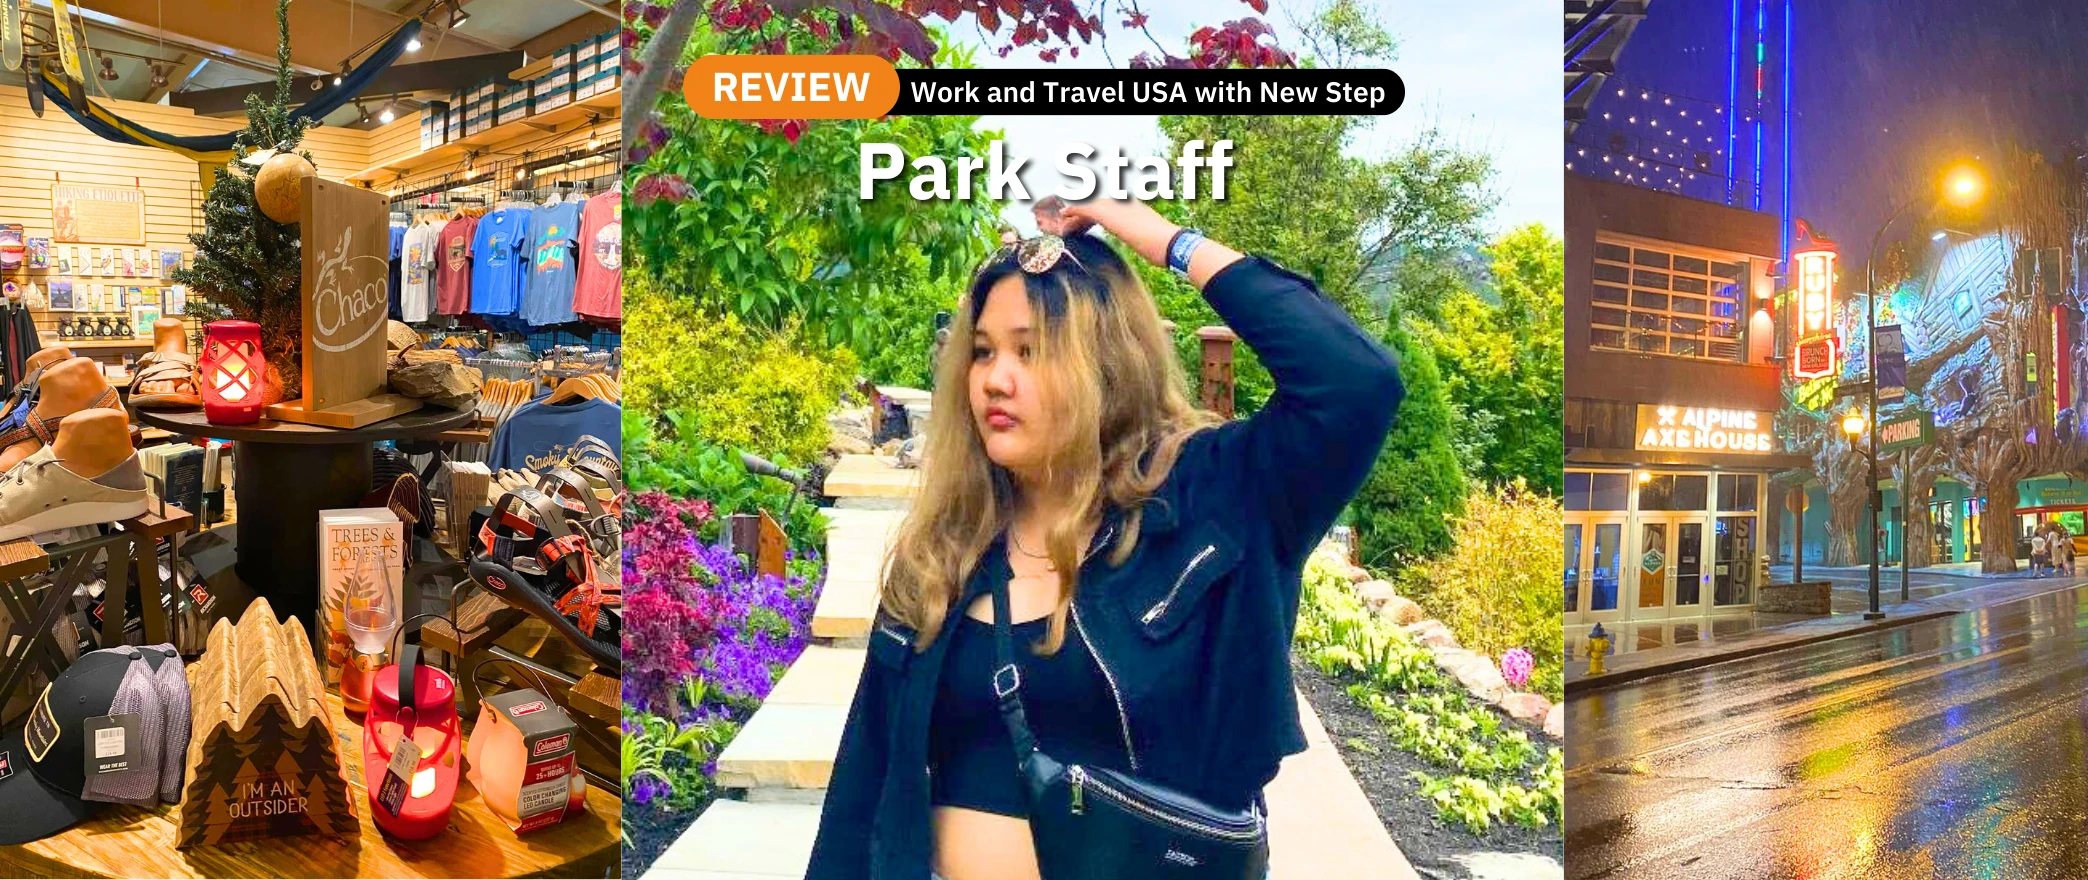 รีวิว review New Step Ober Work and Travel Gatlinburg Tennessee wat2022 park staff ทำงานต่างประเทศ แลกเปลี่ยนวัฒนธรรม ทำงานปิดเทอม ฝึกภาษา อังกฤษ smoky mountains